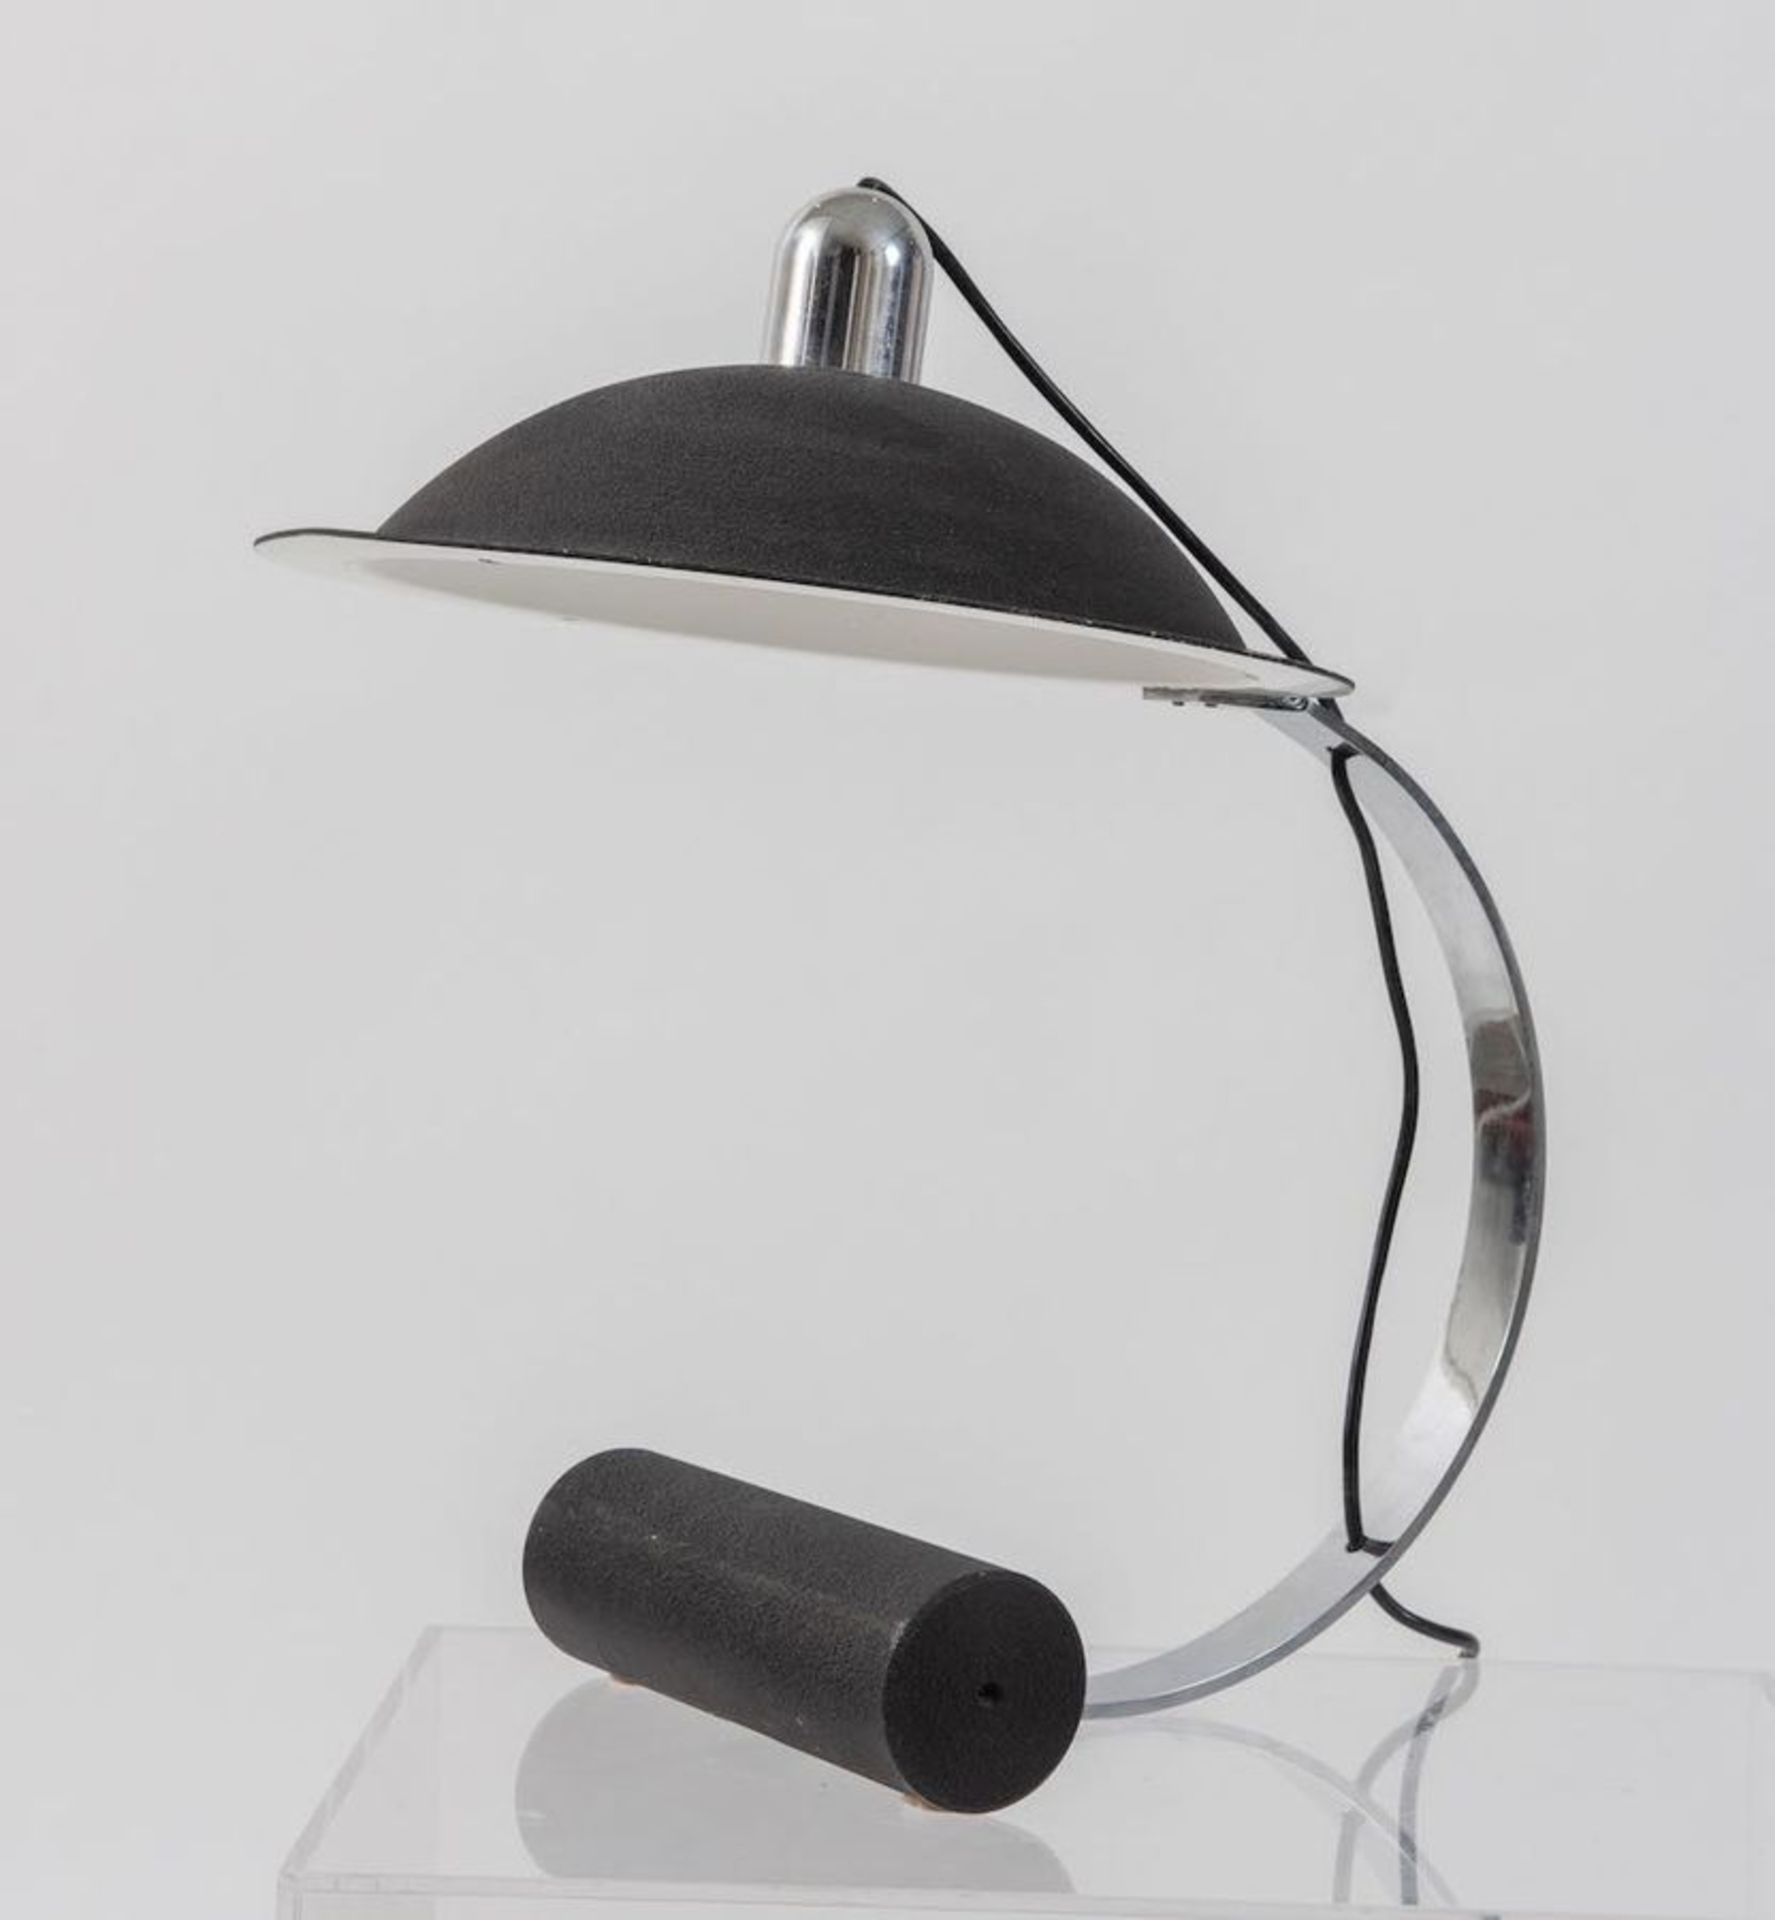 LAMPERTI Lampada da tavolo in acciaio cromato e alluminio verniciato. Prod. Lamperti, Italia, 1970 c